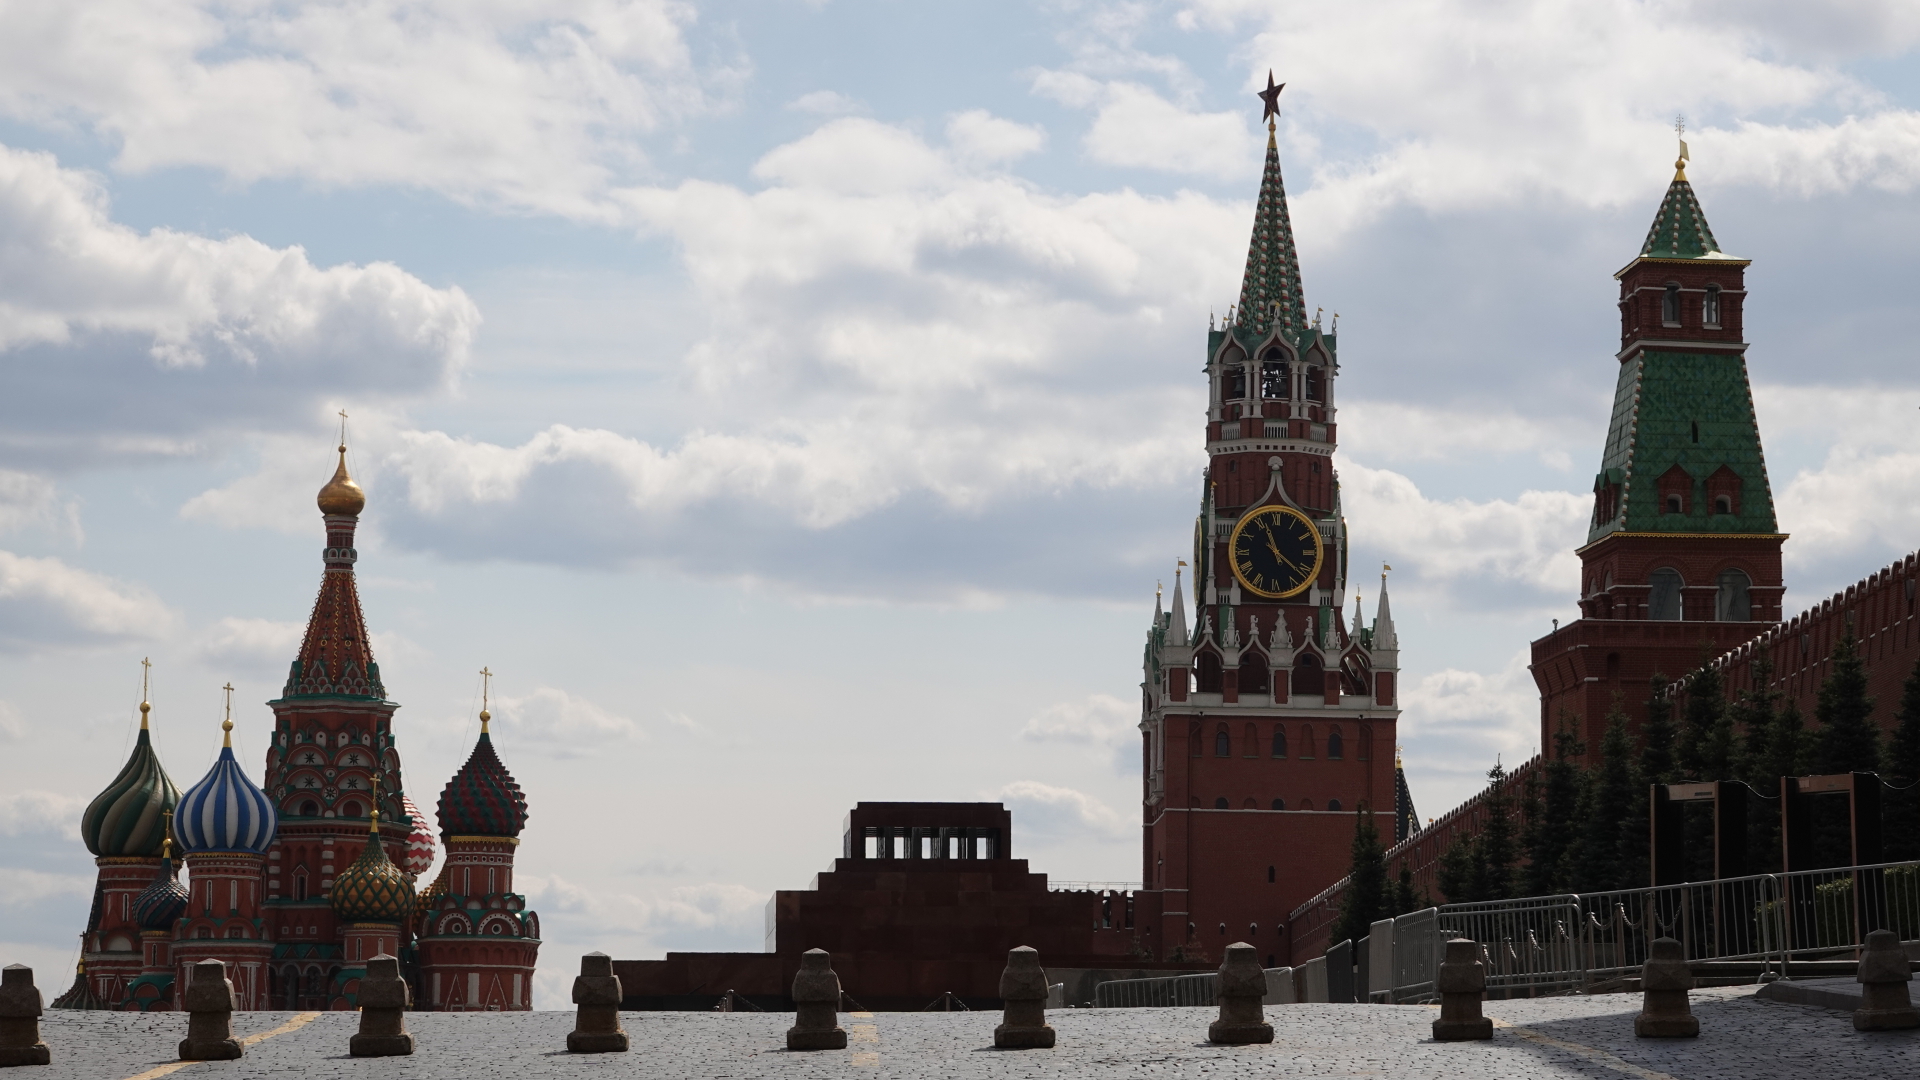 Basiliuskathedrale (li), das Leninmausoleum und der Spasski-Turm des Kreml (re.) am Roten Platz in Moskau. | dpa